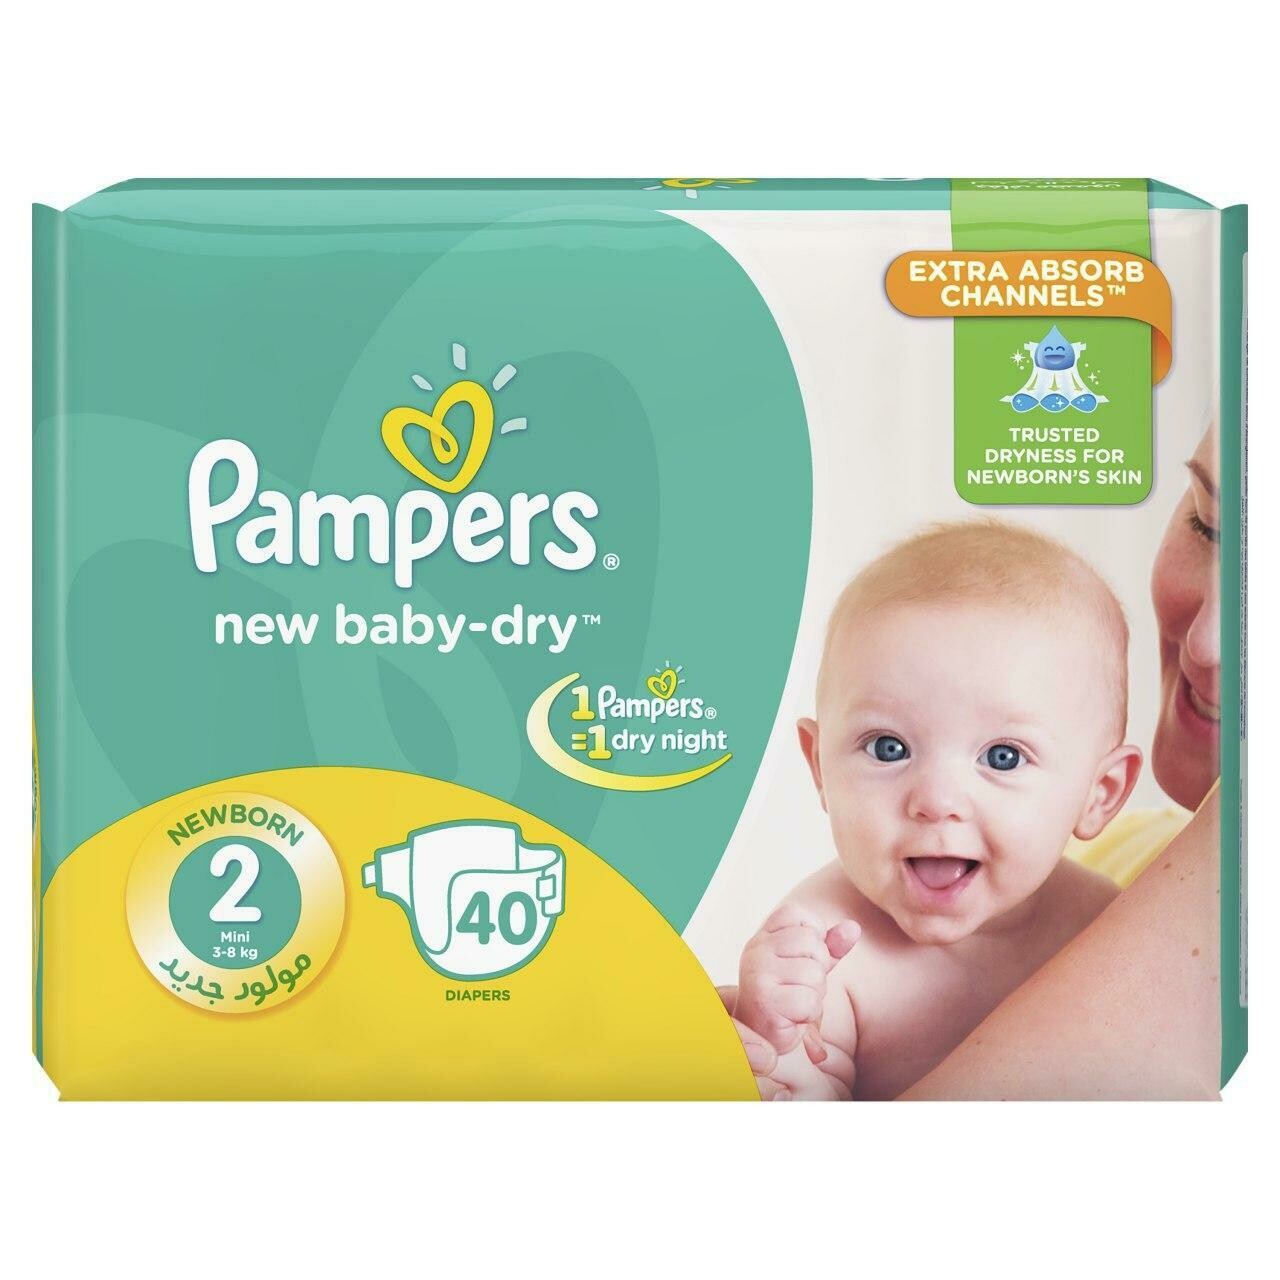 ፓምፐርስ ዳይፐር Pampers Diaper (Ethiopia Only)